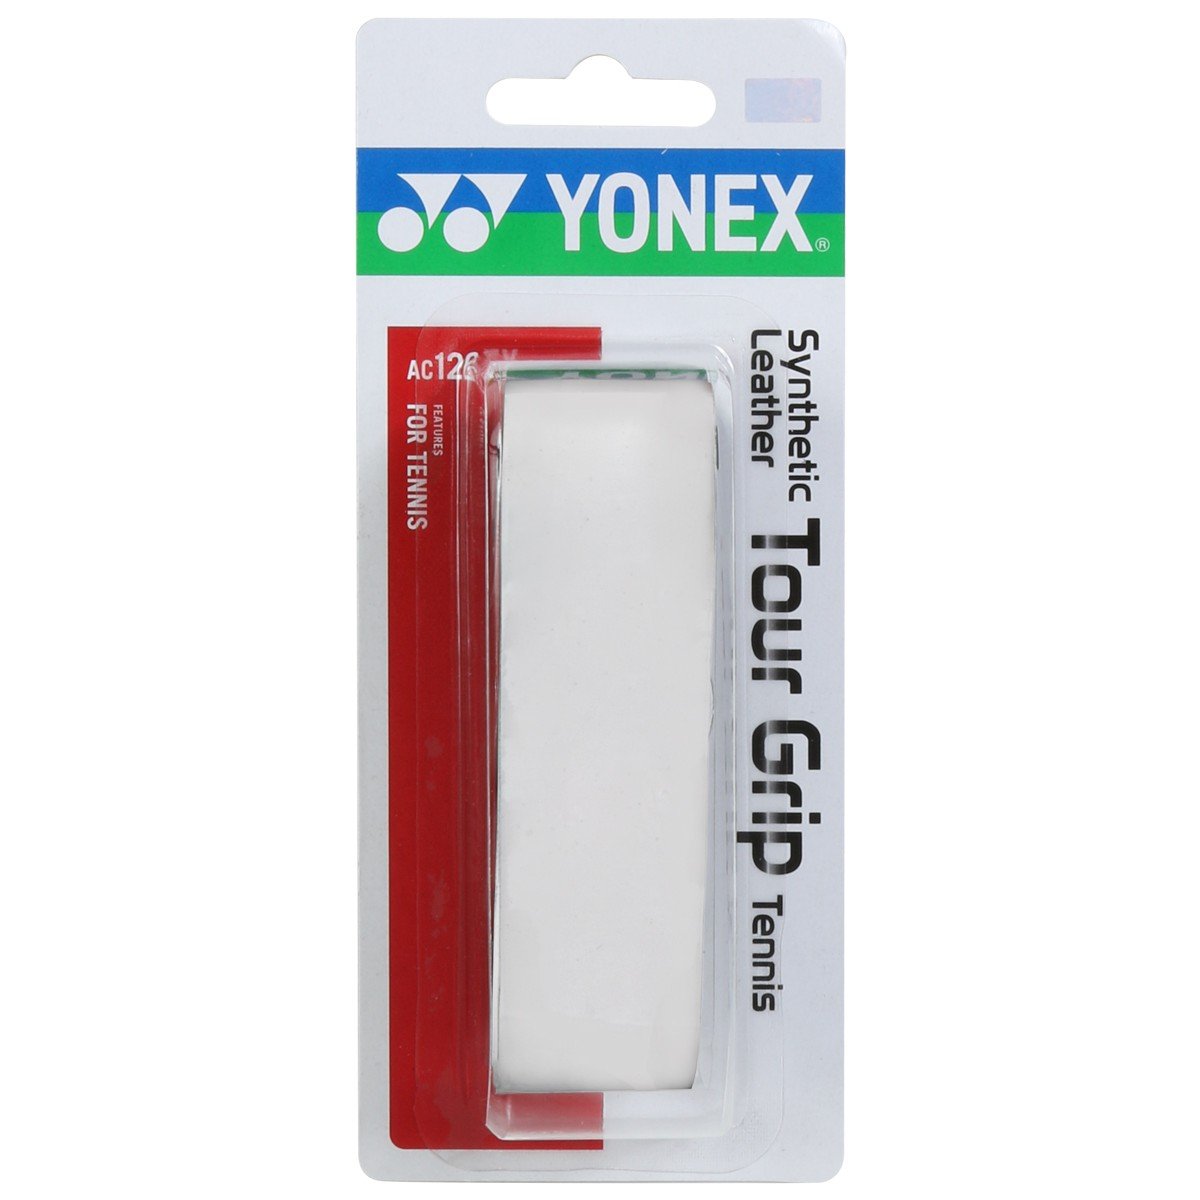 Owijka bazowa Yonex Synthetic Leather Tour Grip biała